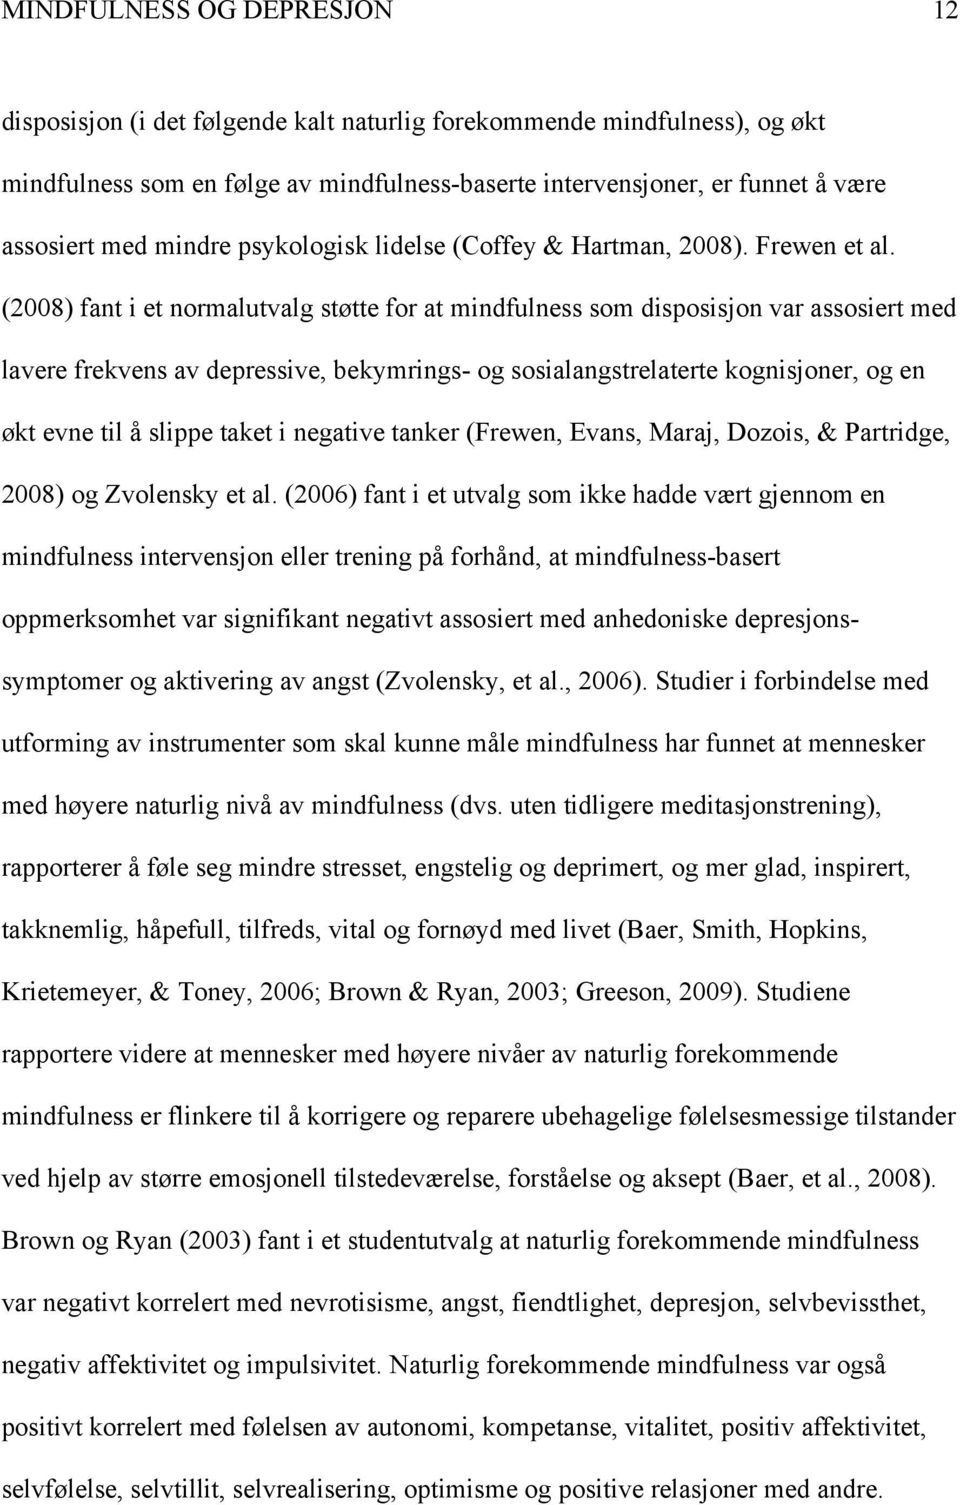 (2008) fant i et normalutvalg støtte for at mindfulness som disposisjon var assosiert med lavere frekvens av depressive, bekymrings- og sosialangstrelaterte kognisjoner, og en økt evne til å slippe